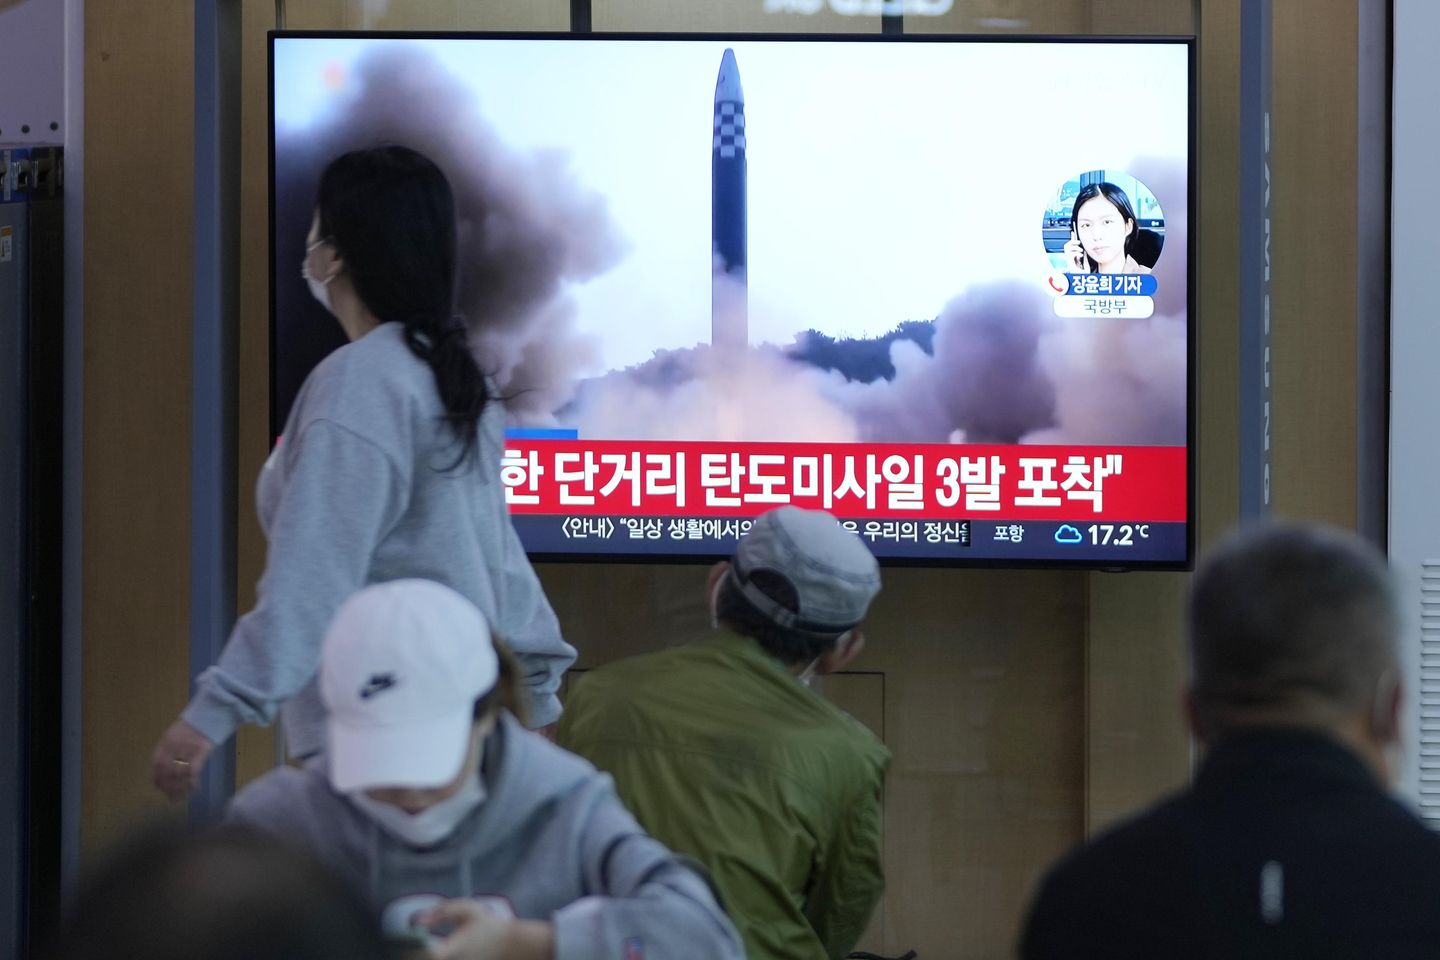 North Korea fires 3 ballistic missiles amid 1st virus outbreak